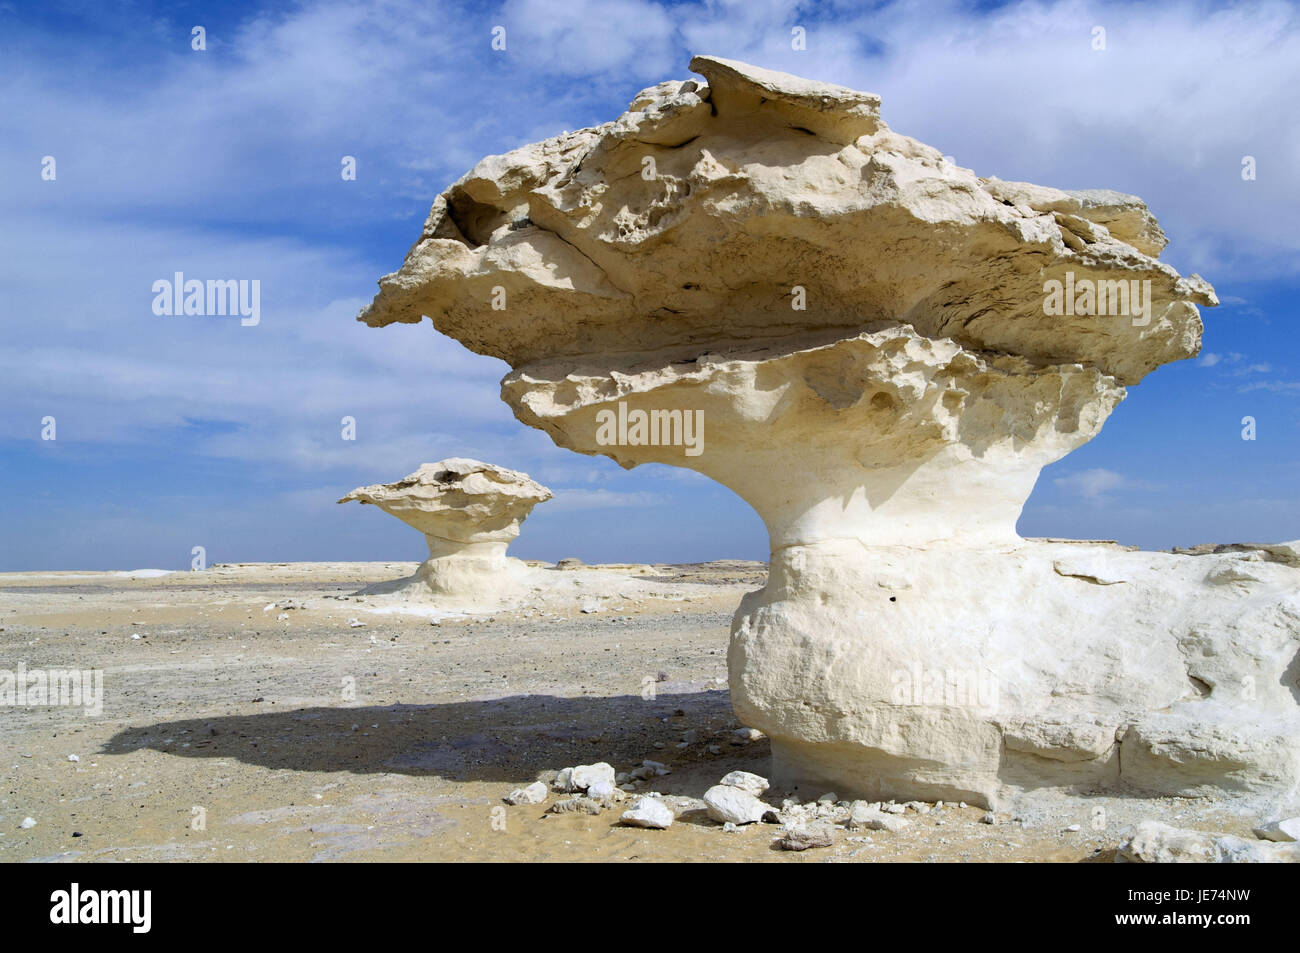 Africa, Egypt, Libyan desert, white desert, rock formation, Stock Photo